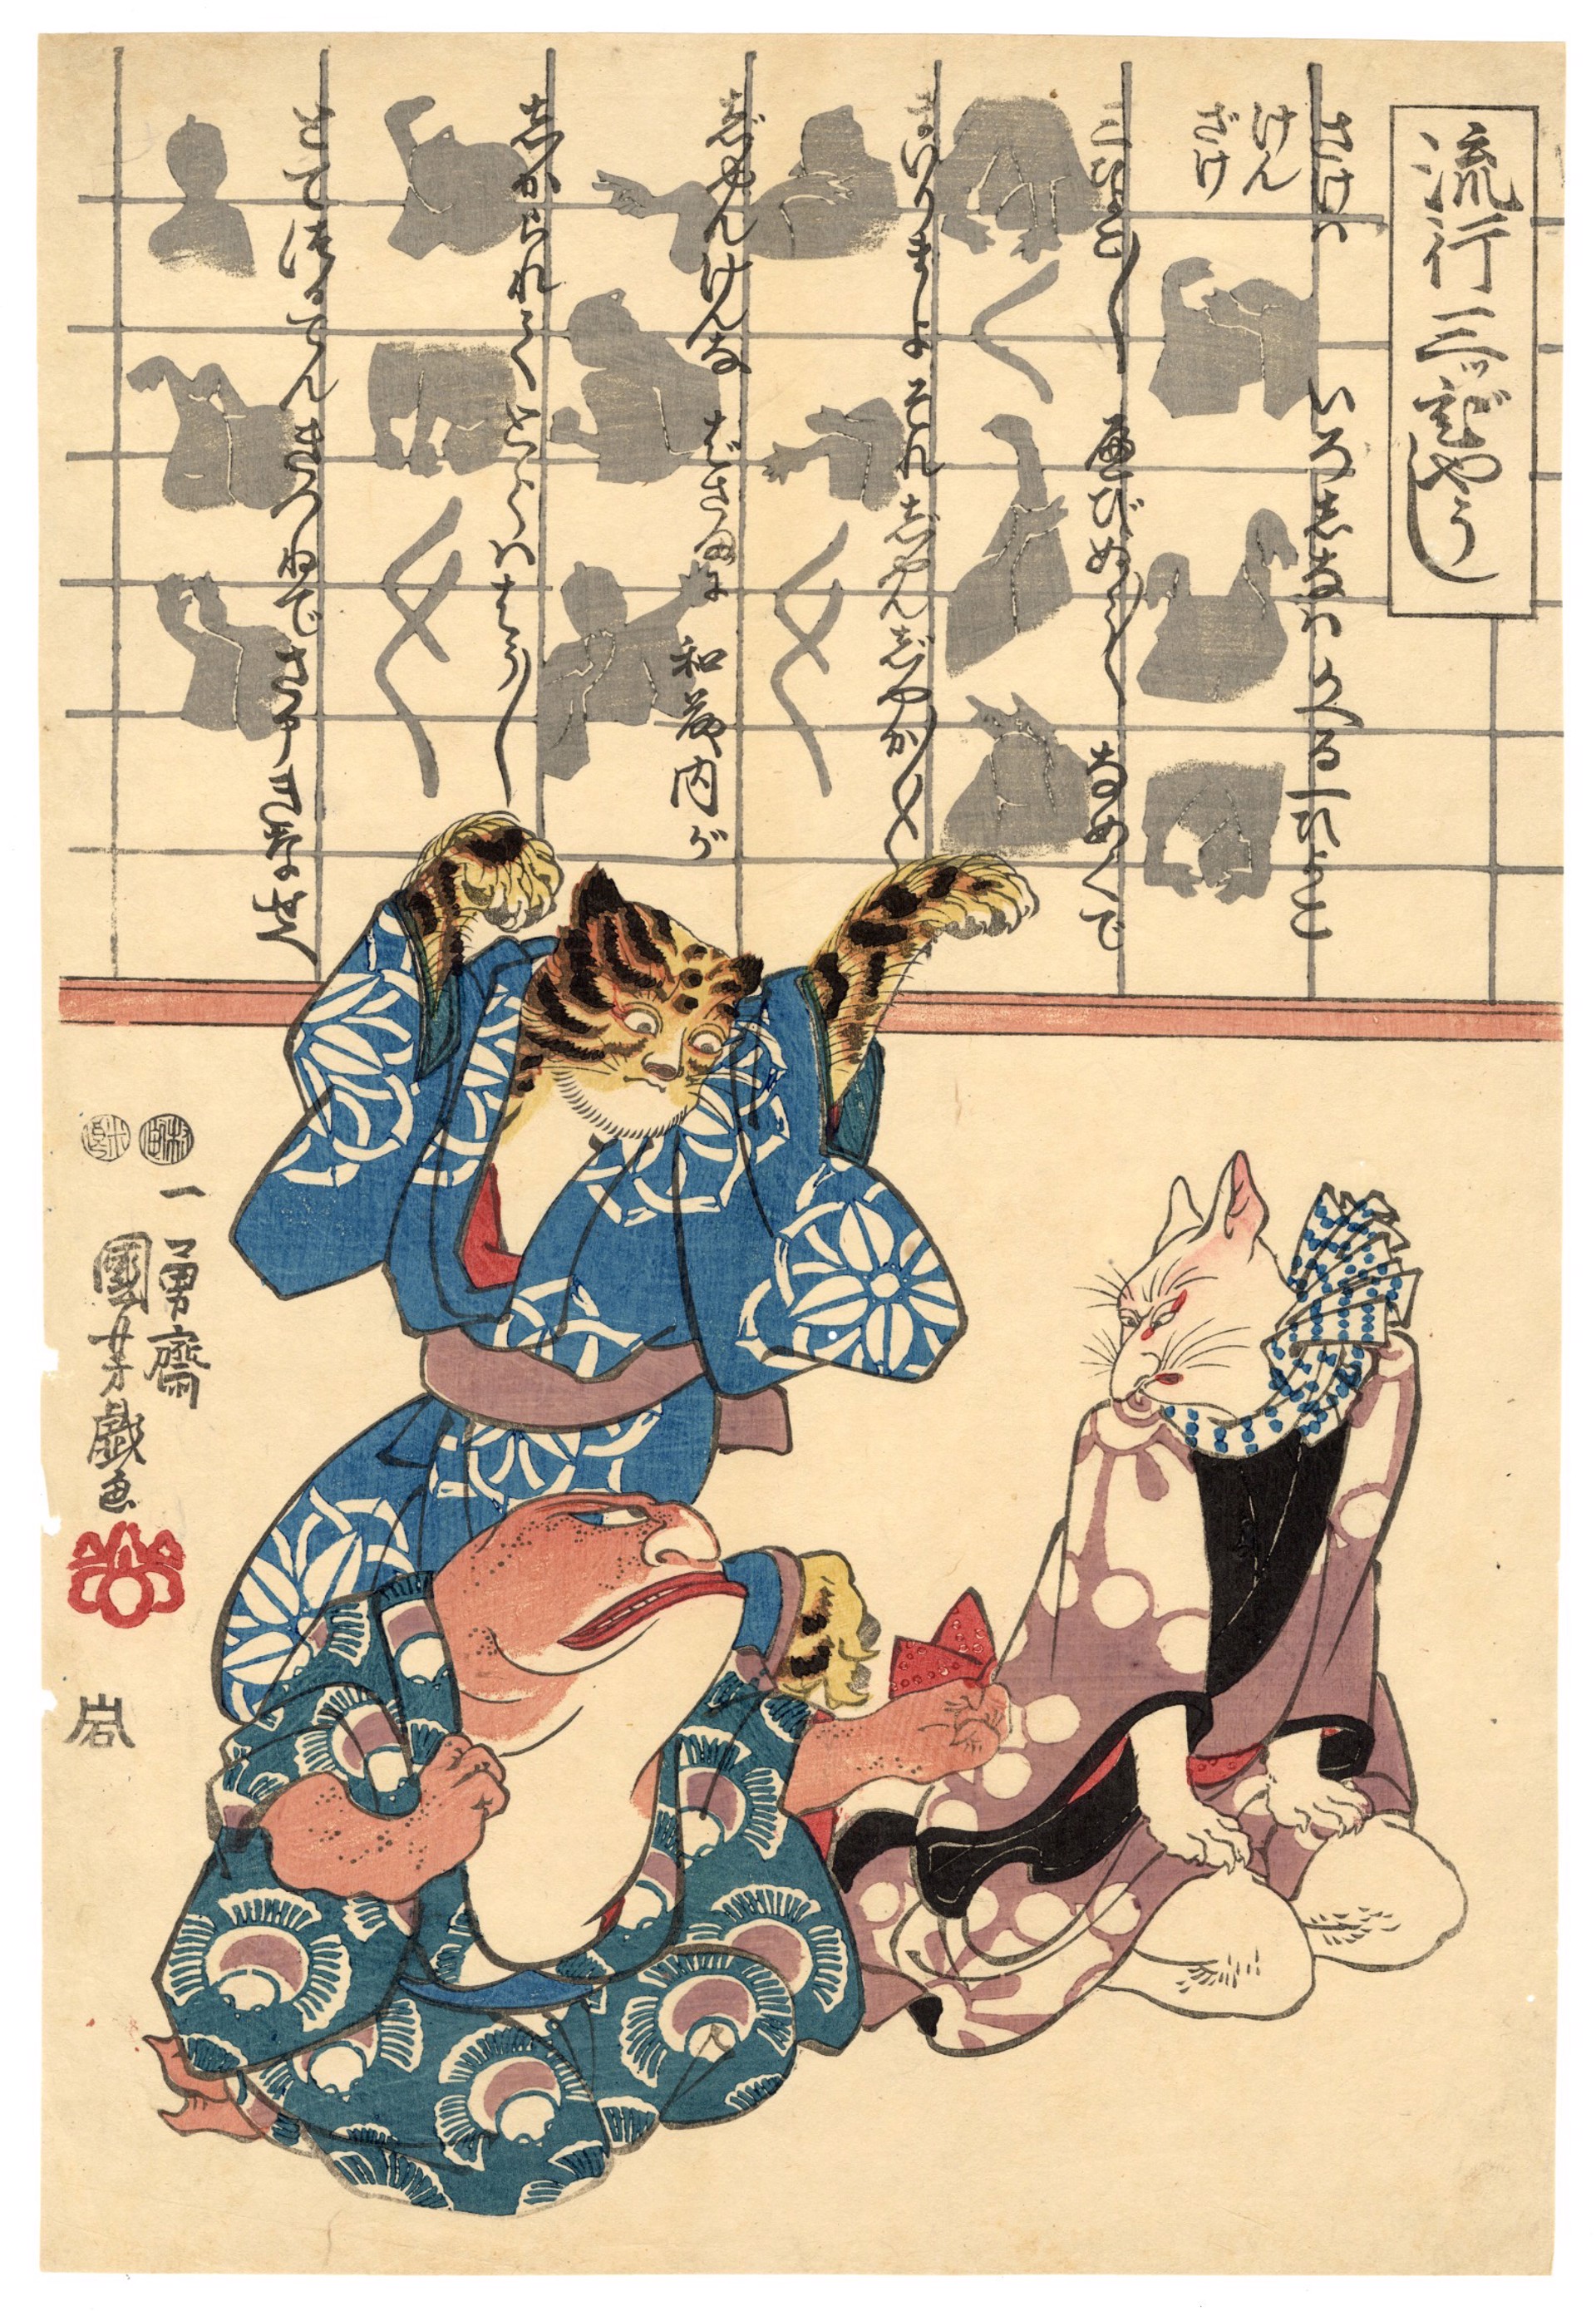 A Popular Three Man Play (Ken Game) by Kuniyoshi